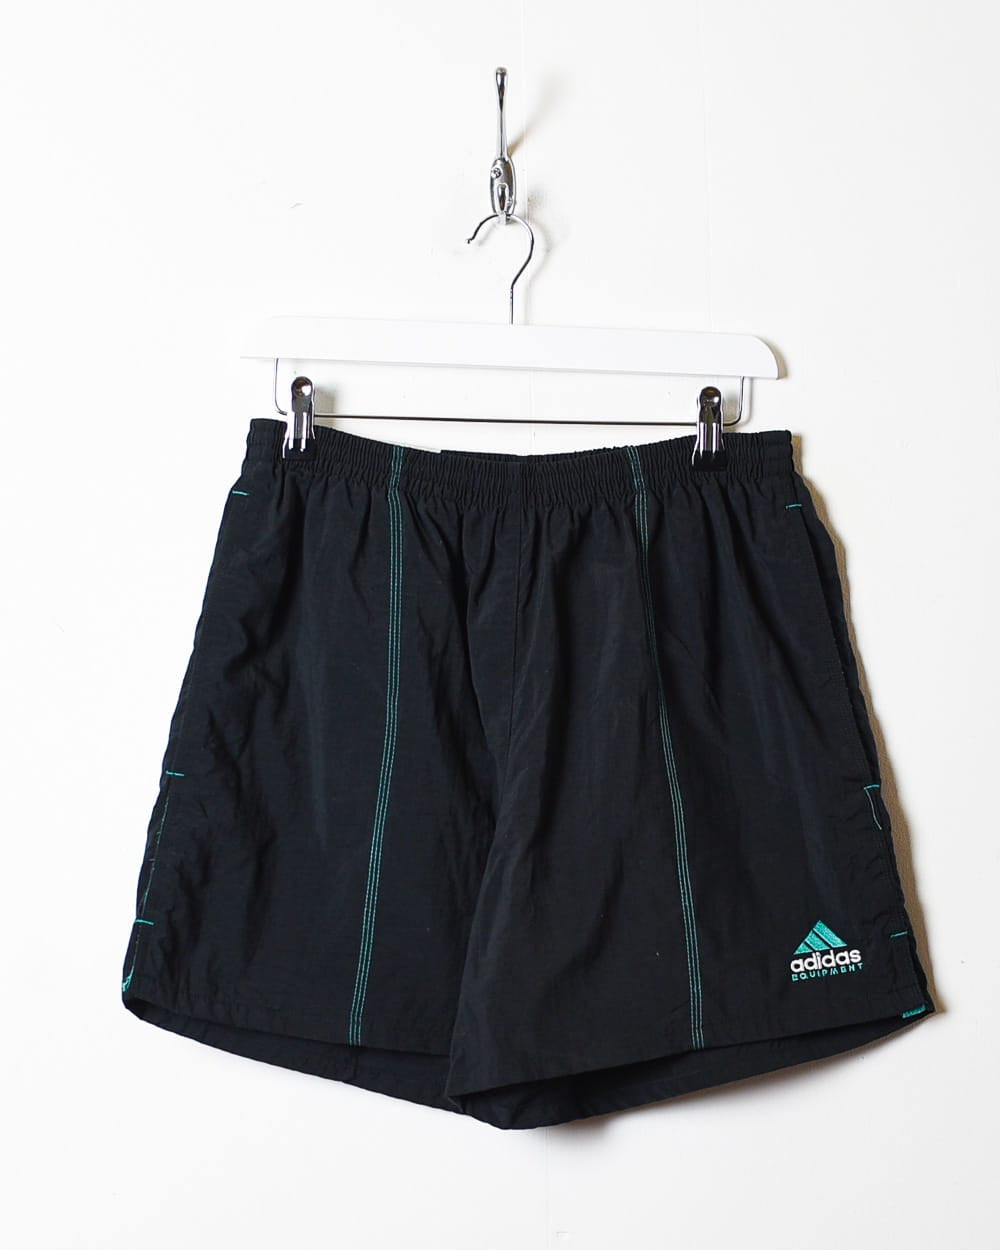 Black Adidas Equipment Shorts - Large